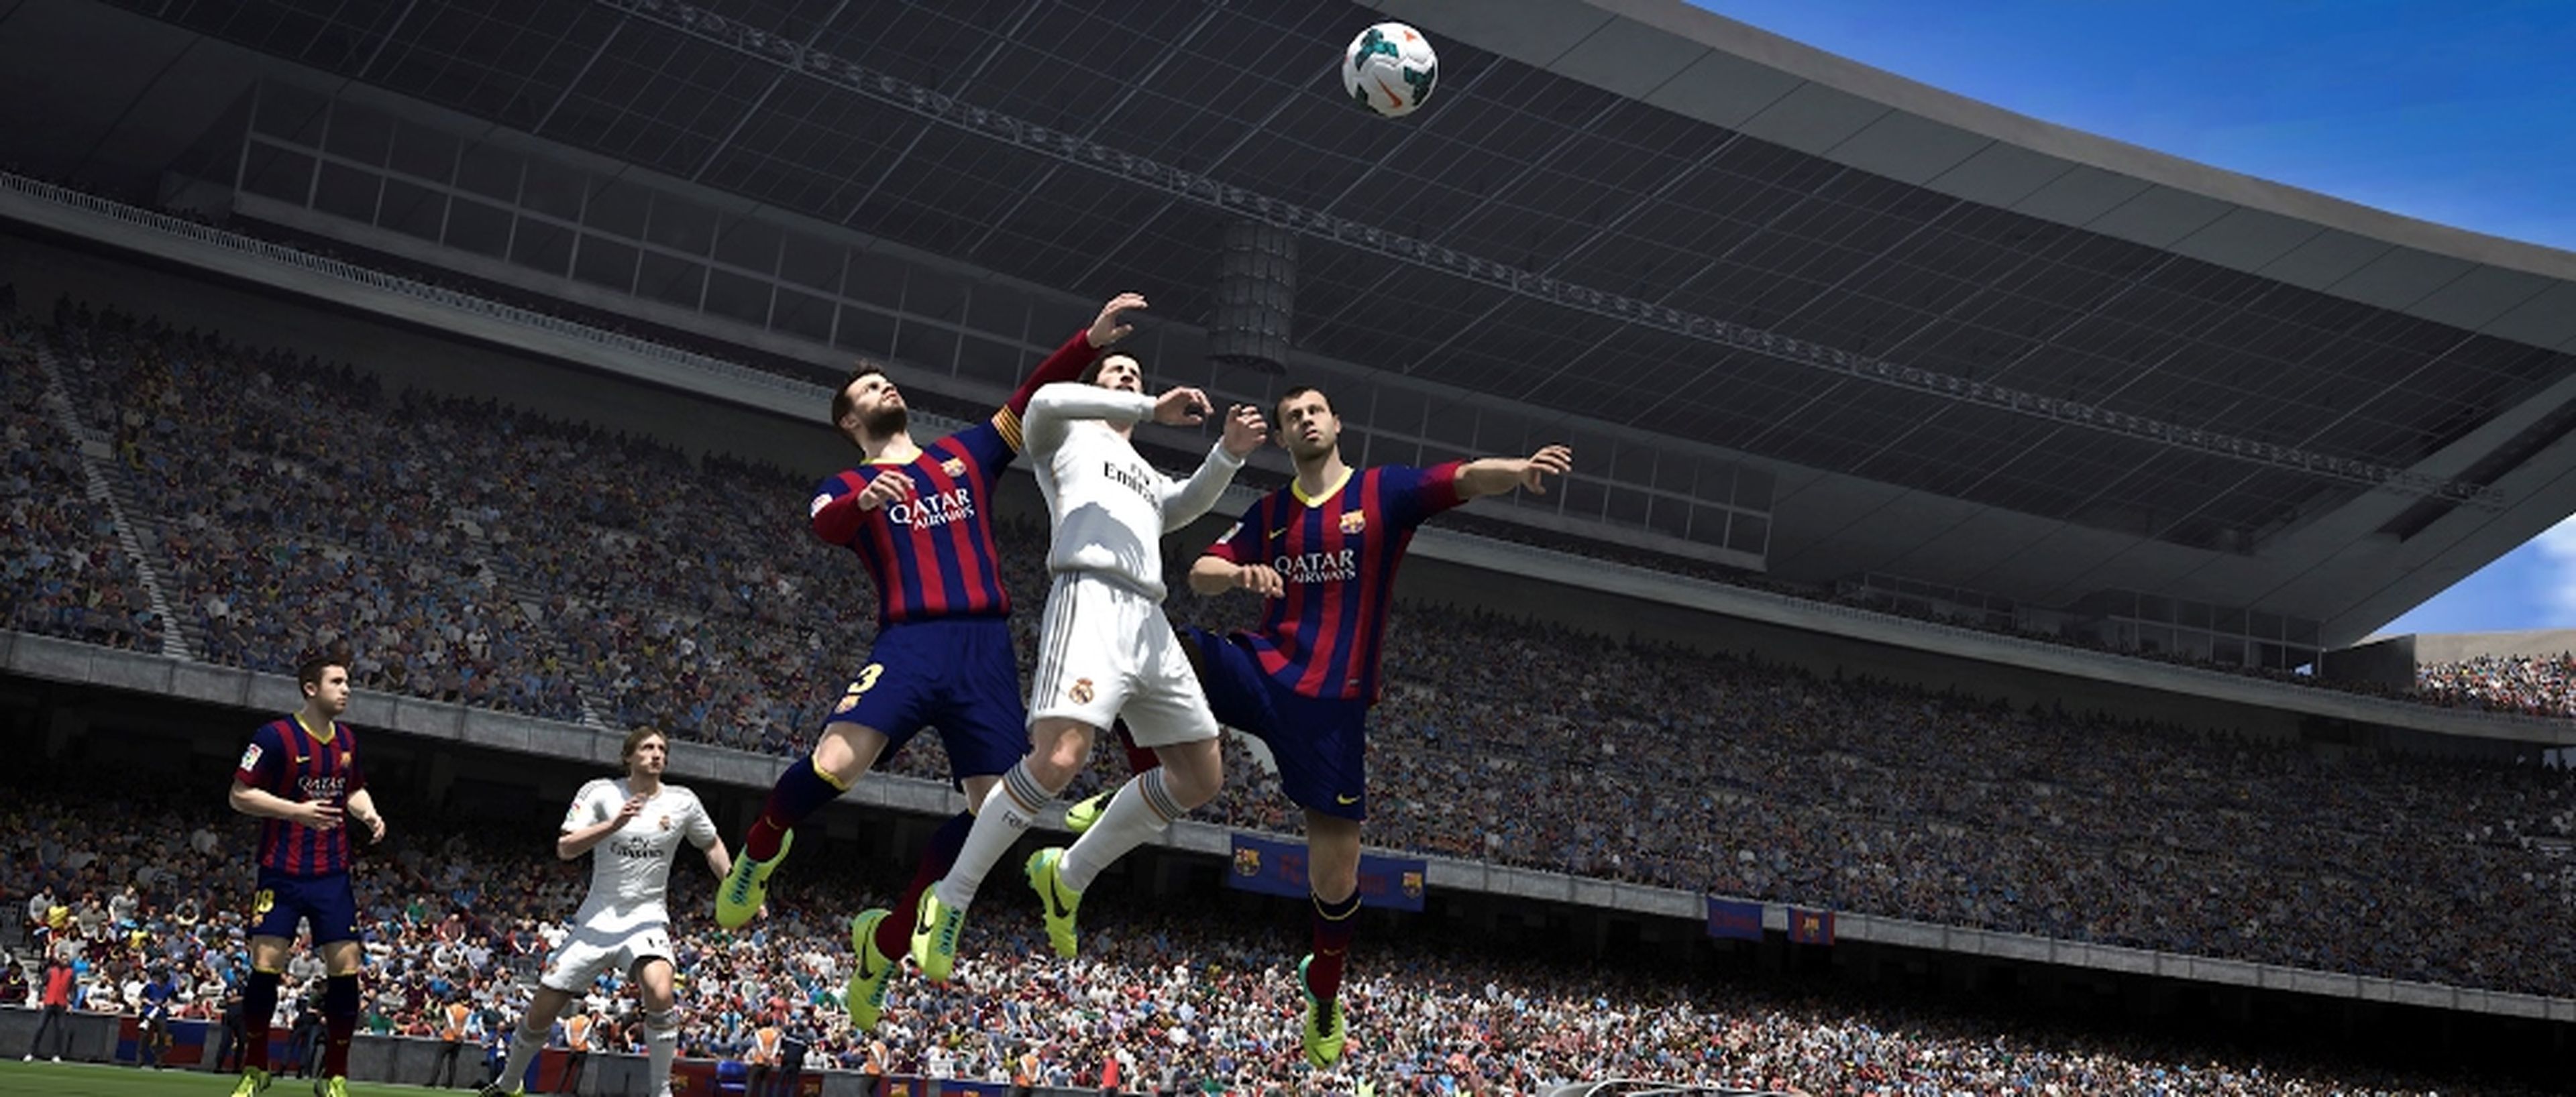 Análisis de FIFA 14 para PS4 y Xbox One